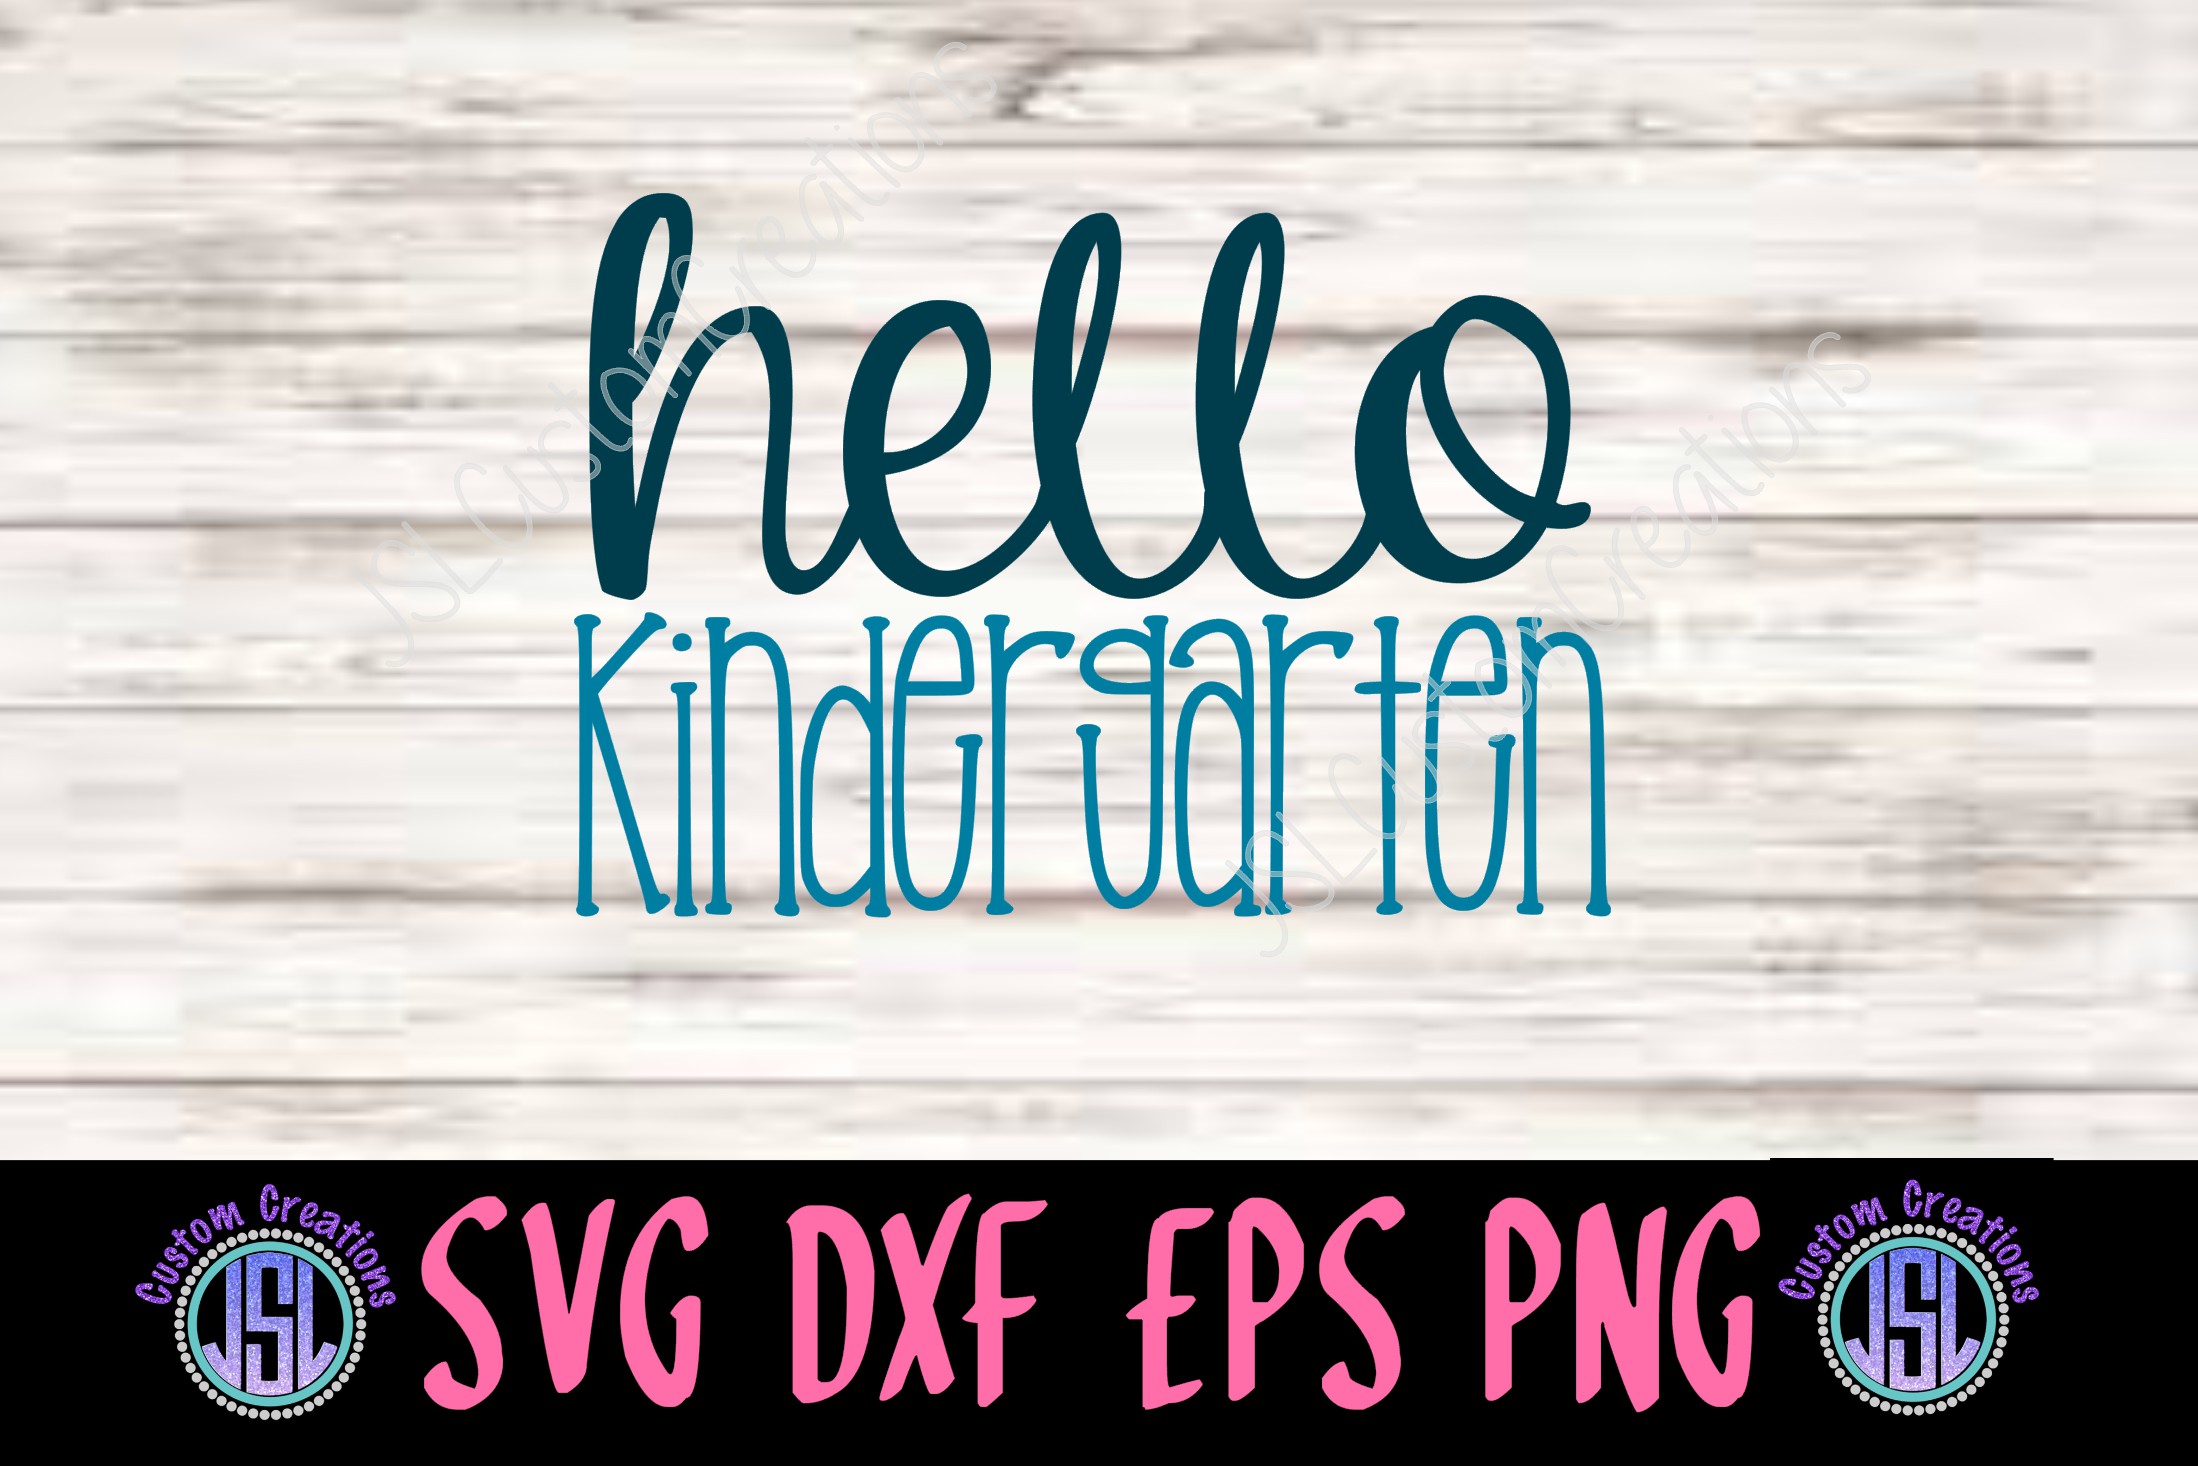 Free Free 214 Kindergarten Svg Free SVG PNG EPS DXF File